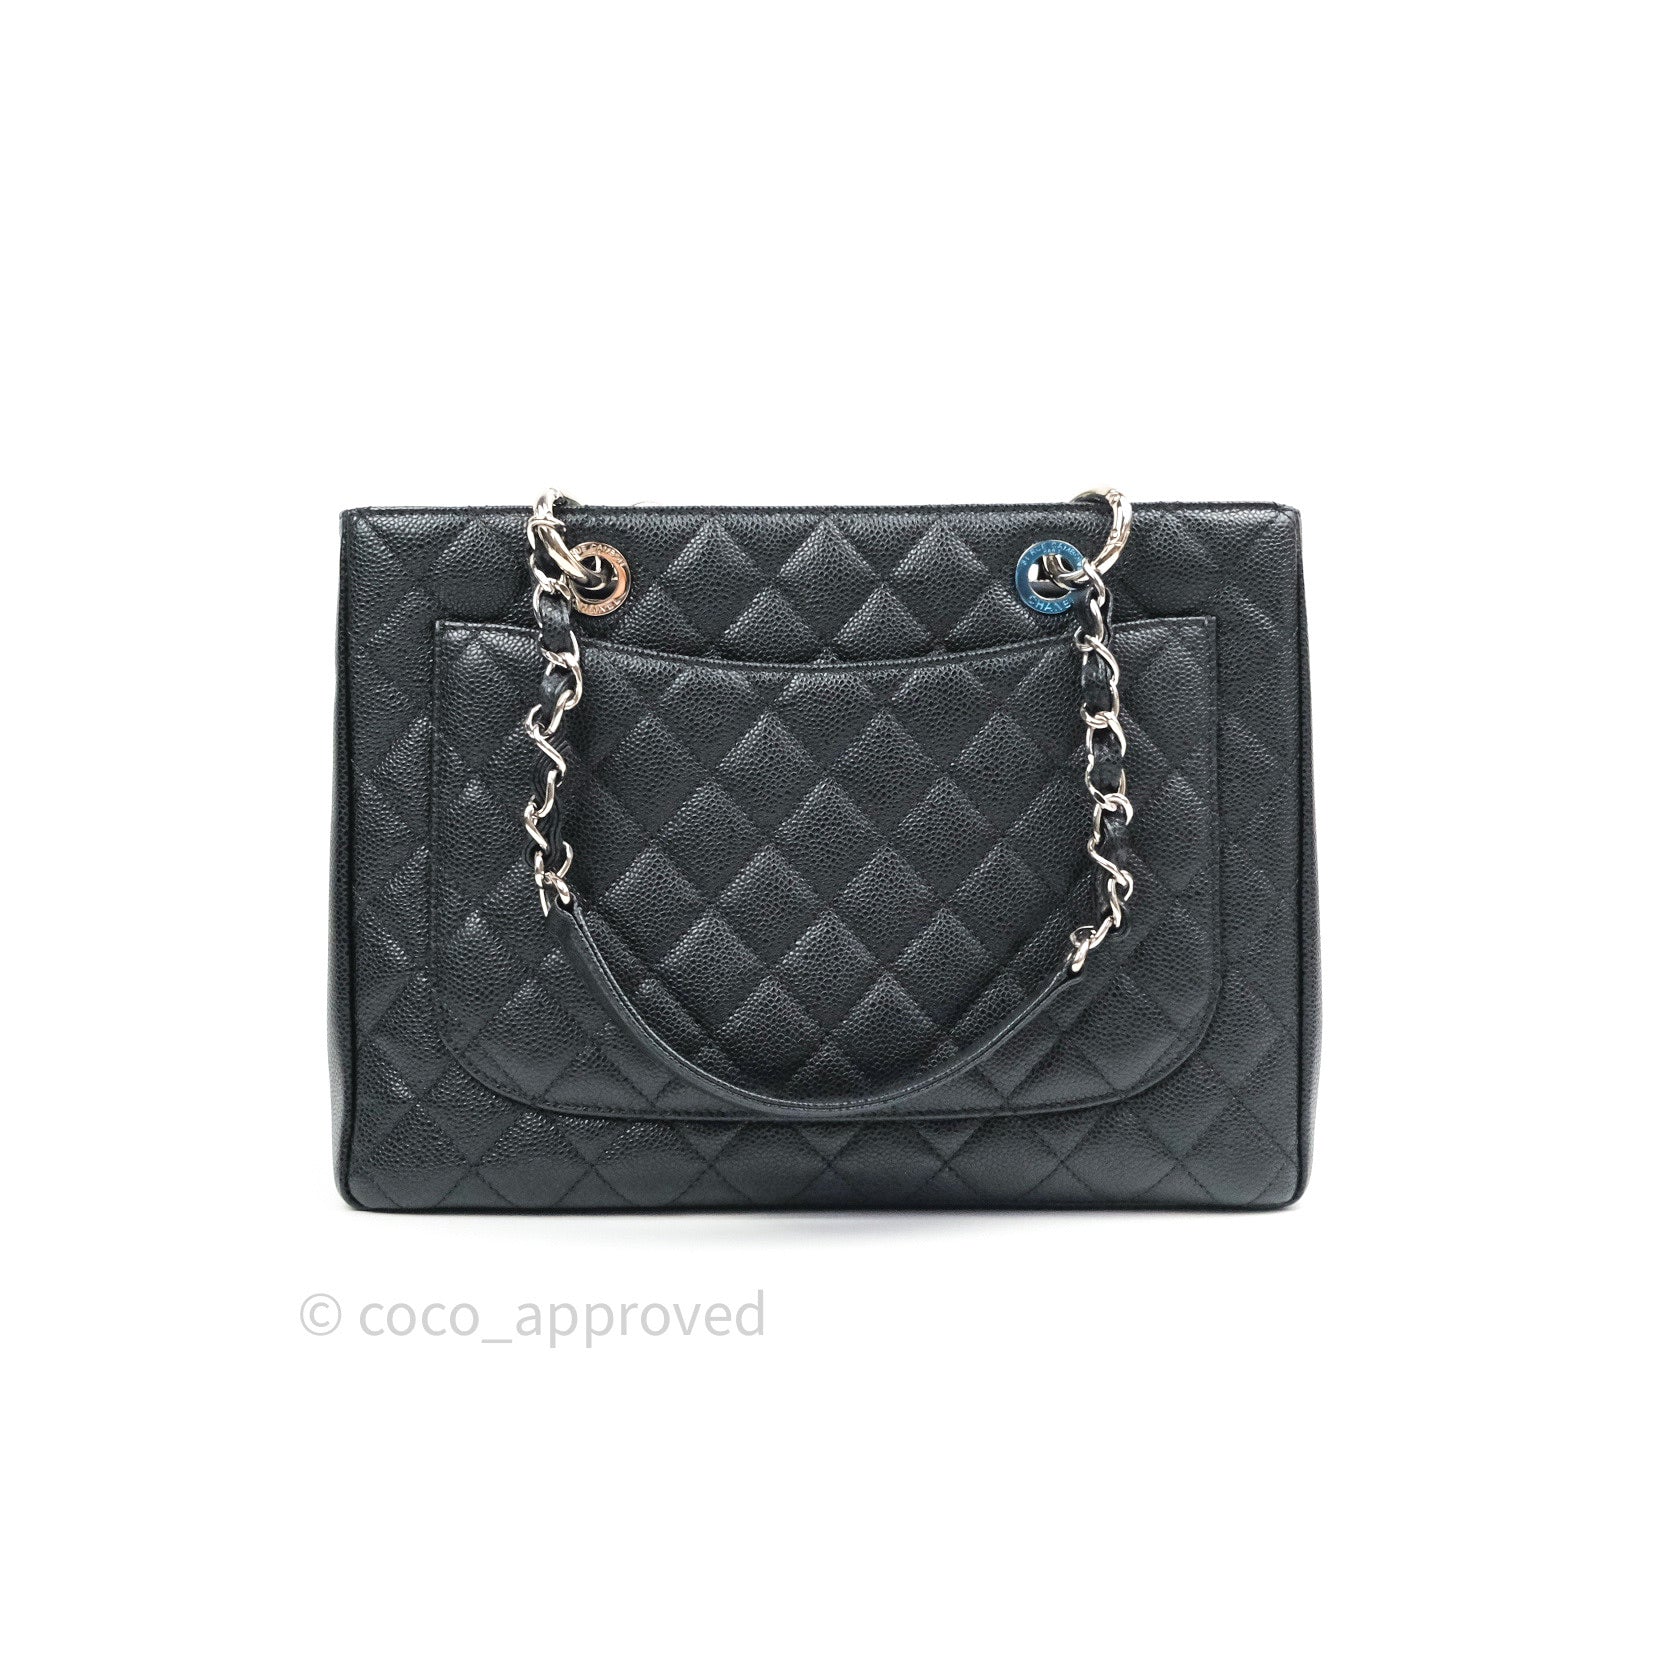 Chanel GST Grand Shopping Tote Black Caviar Silver Hardware – Coco